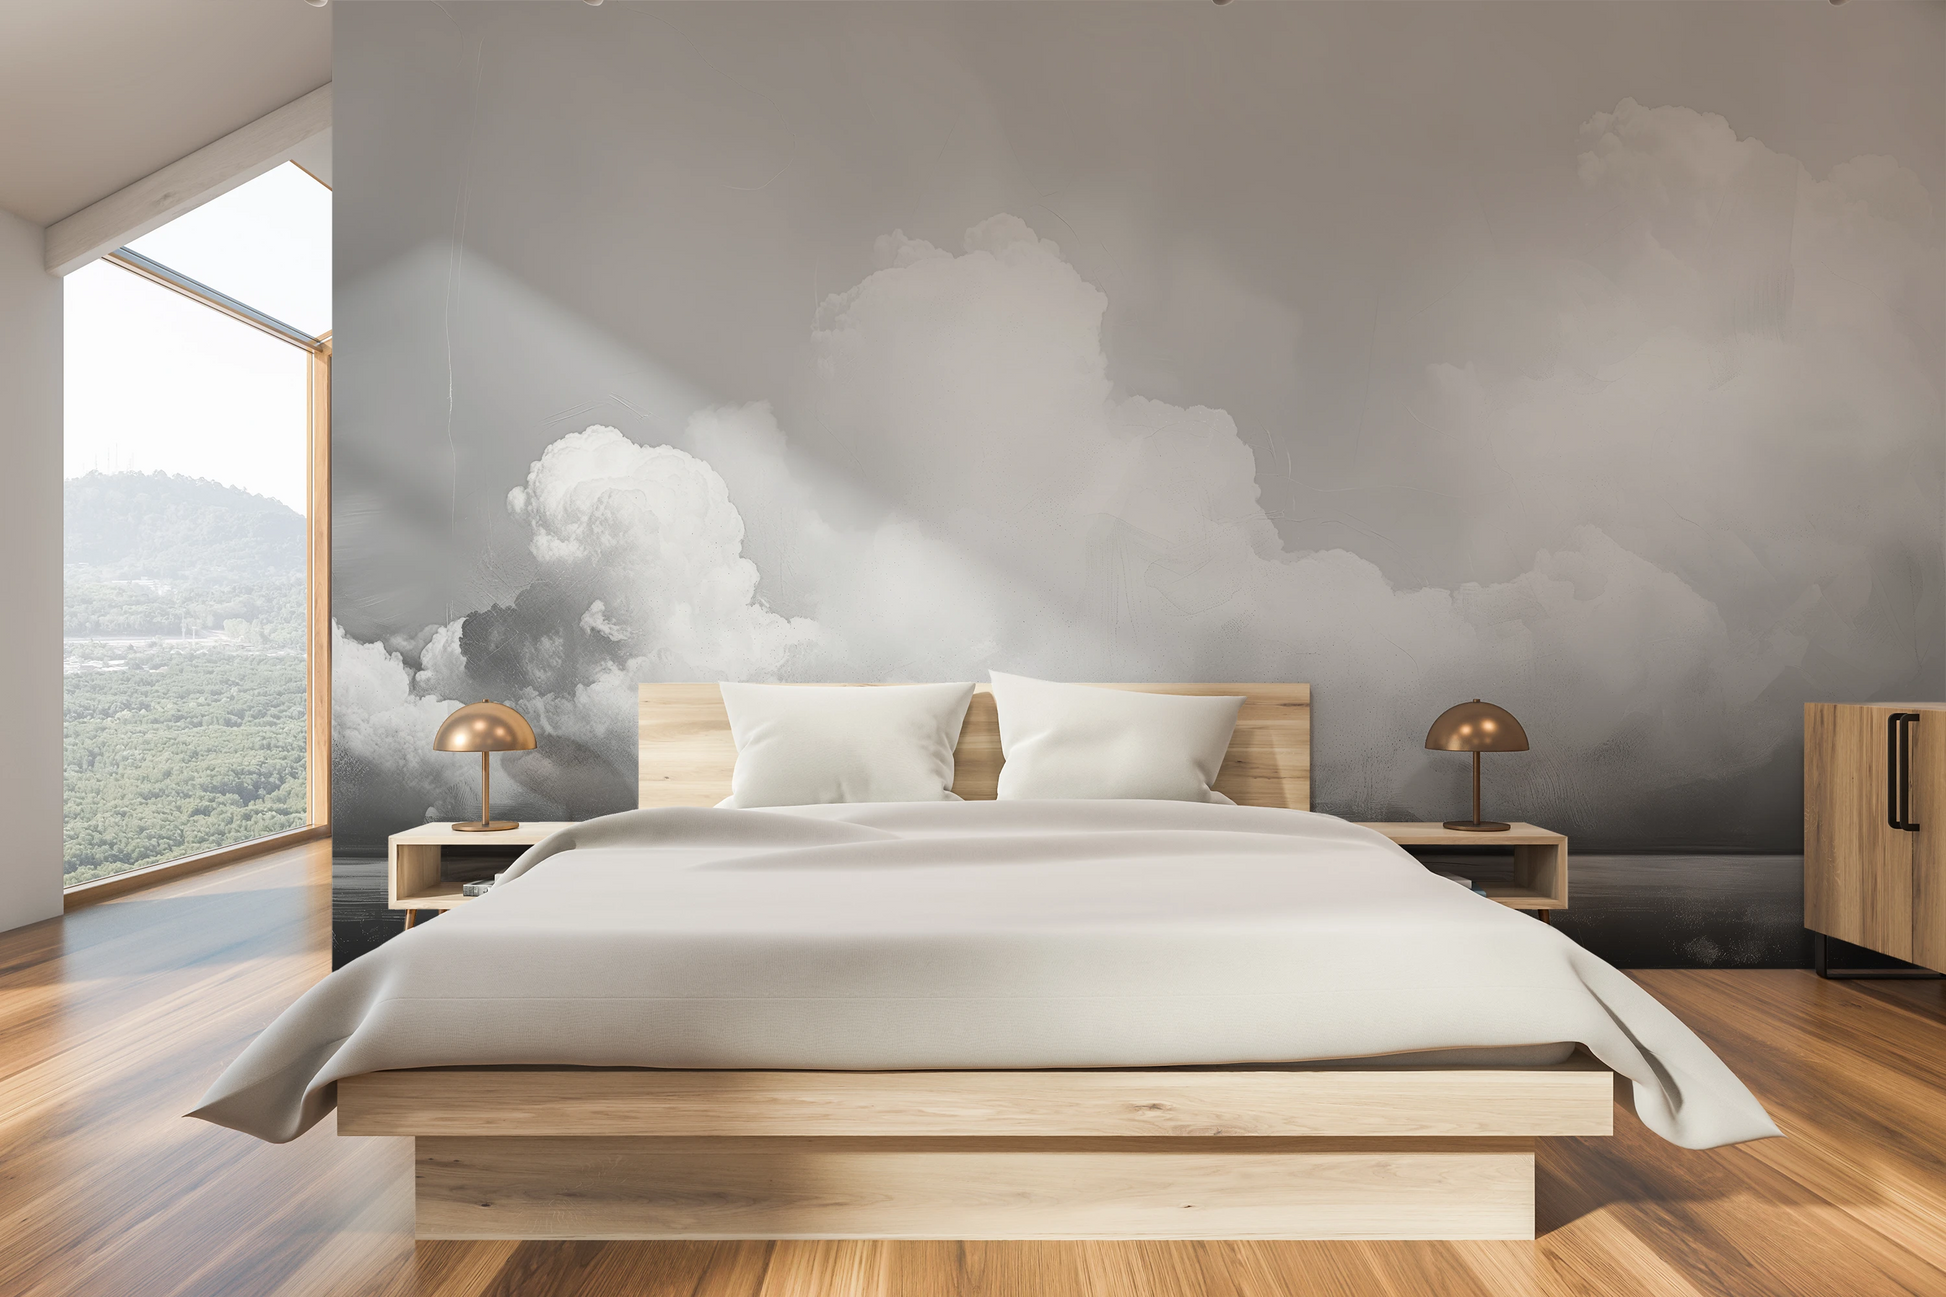 Zdjęcie prezentuje aranżację wnętrza z użyciem fototapety o nazwie Clouds of Tranquility pokazanej w aranżacji wnętrza.